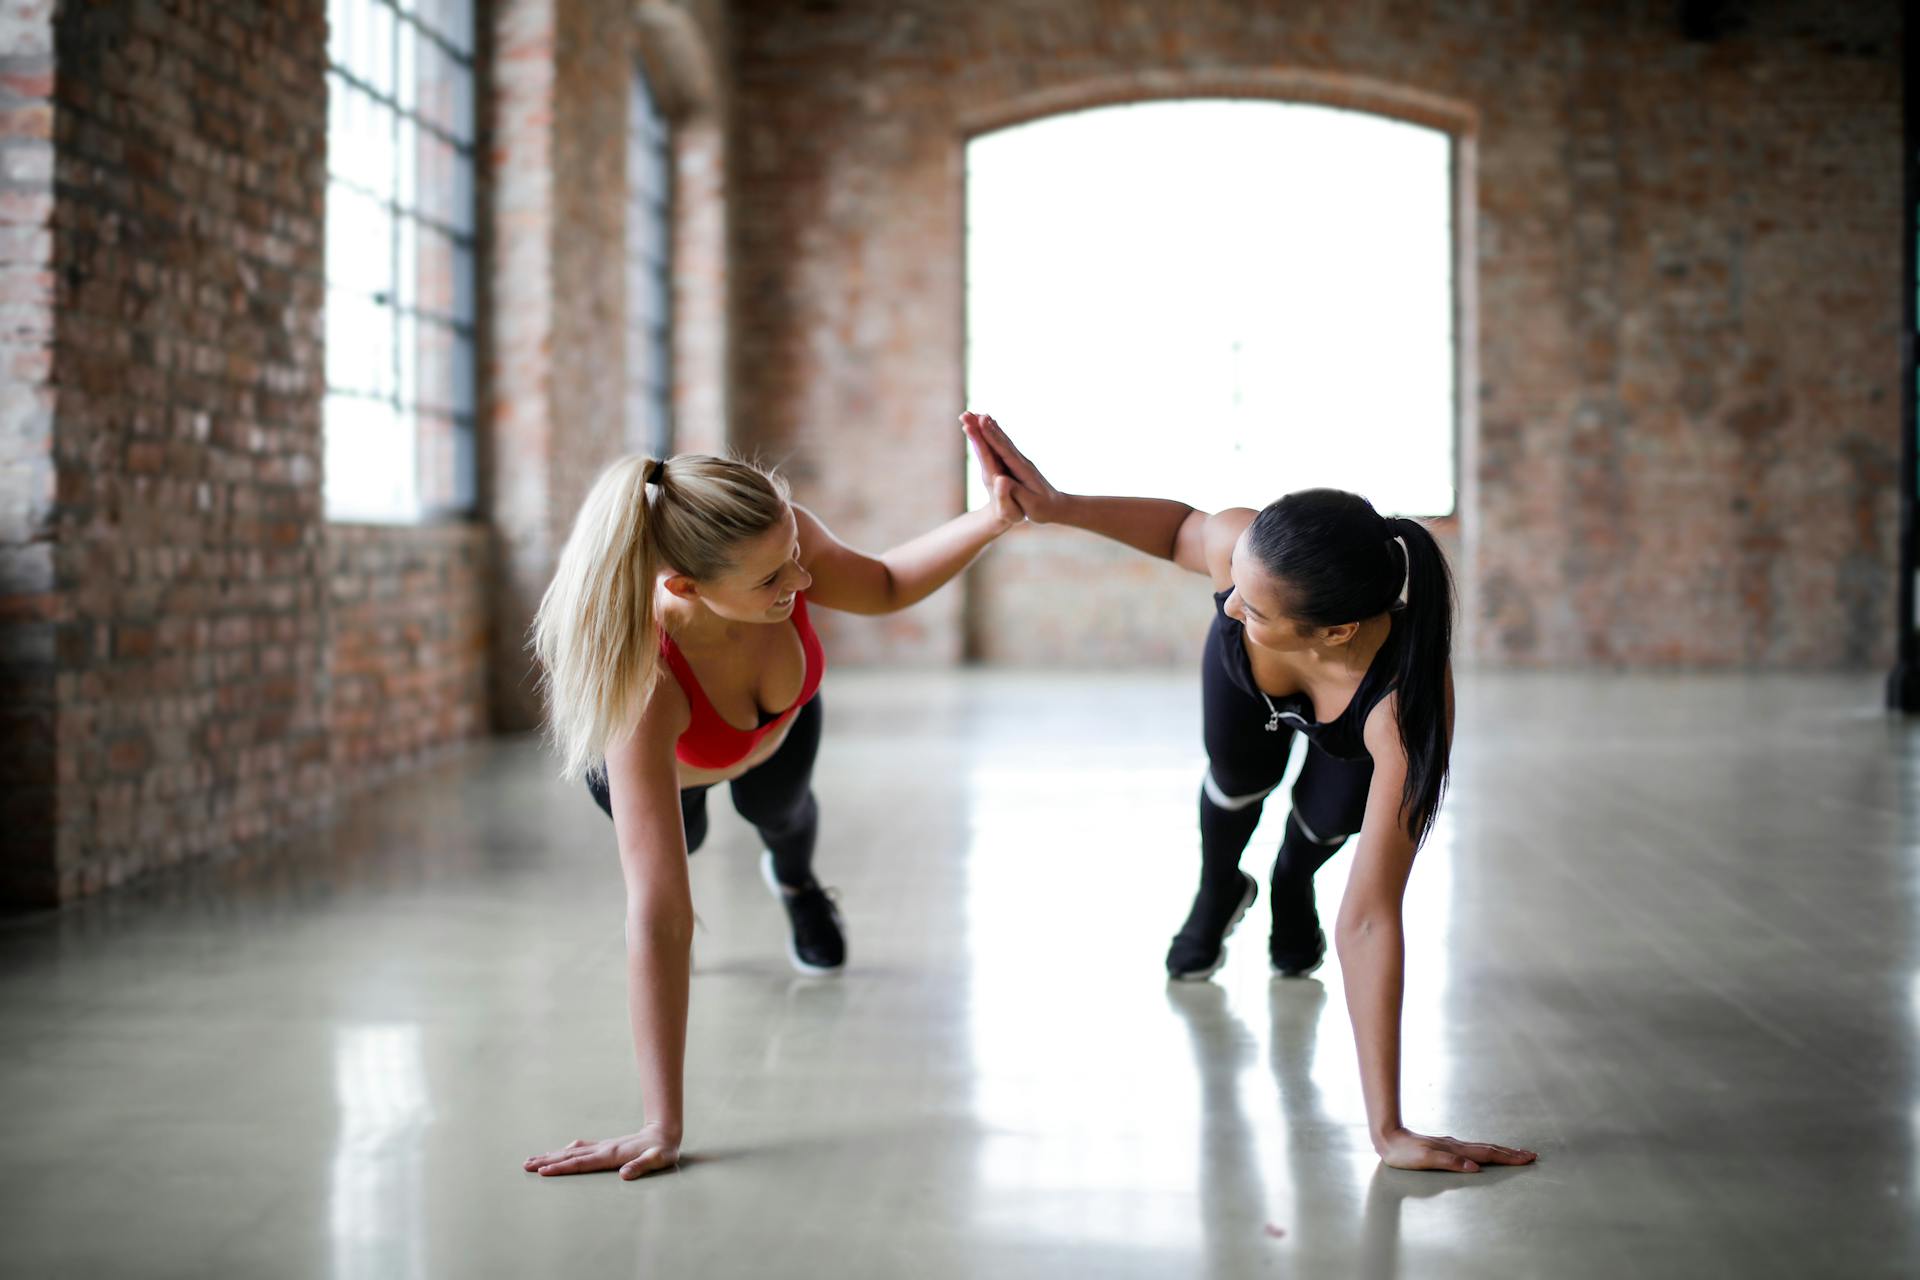 Zwei Frauen geben sich beim gemeinsamen Training ein High-Five | Quelle: Pexels